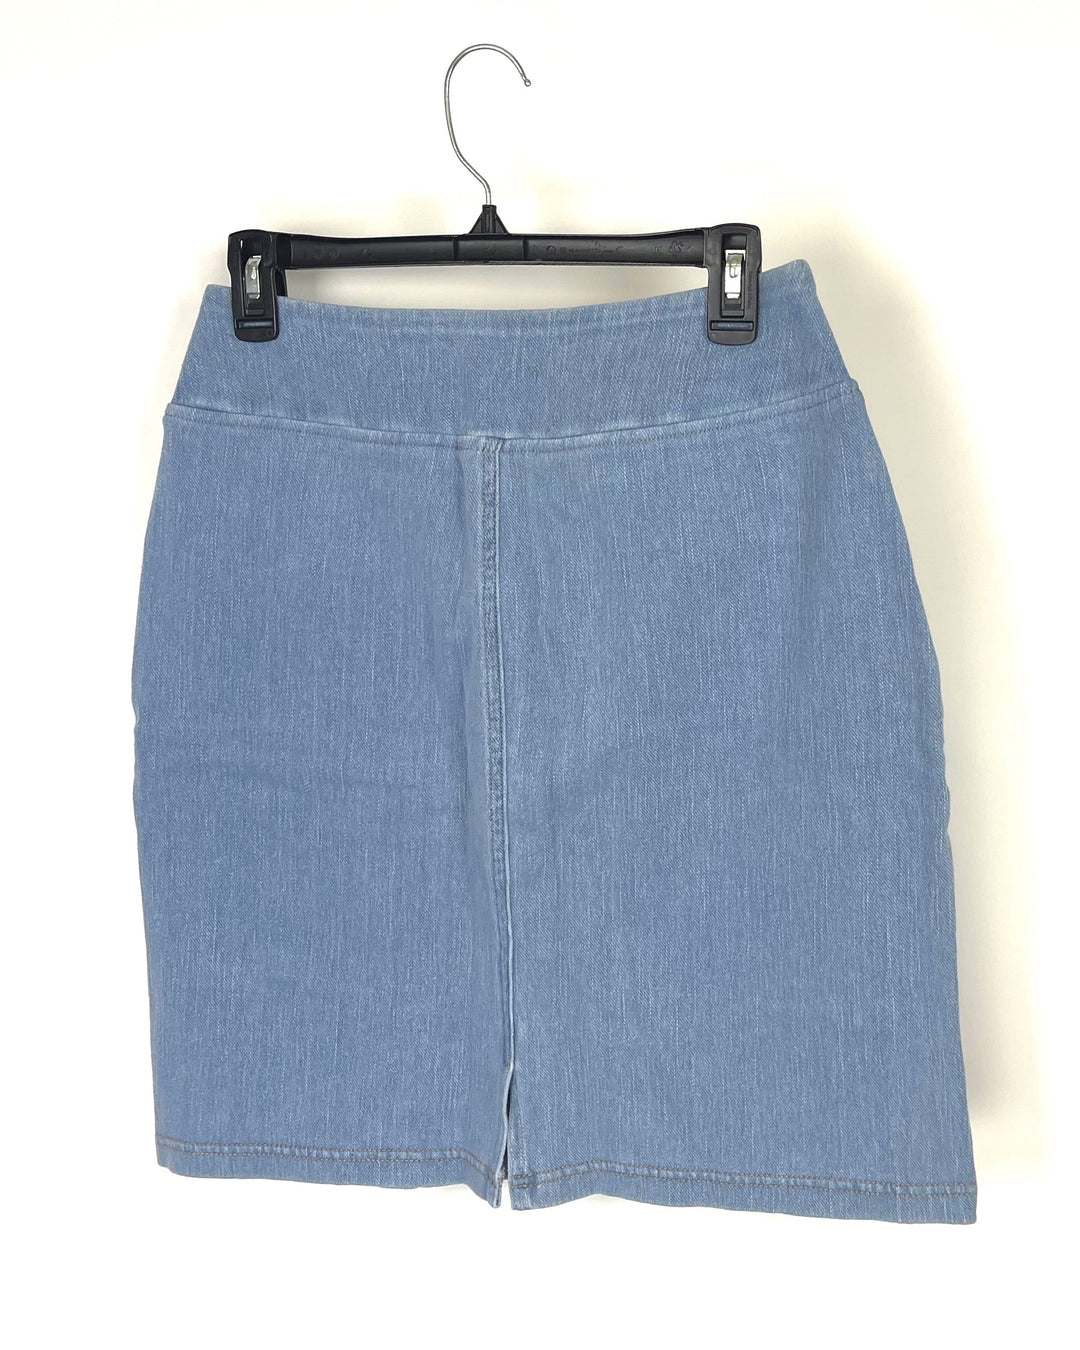 Denim Skirt - Size 6/8